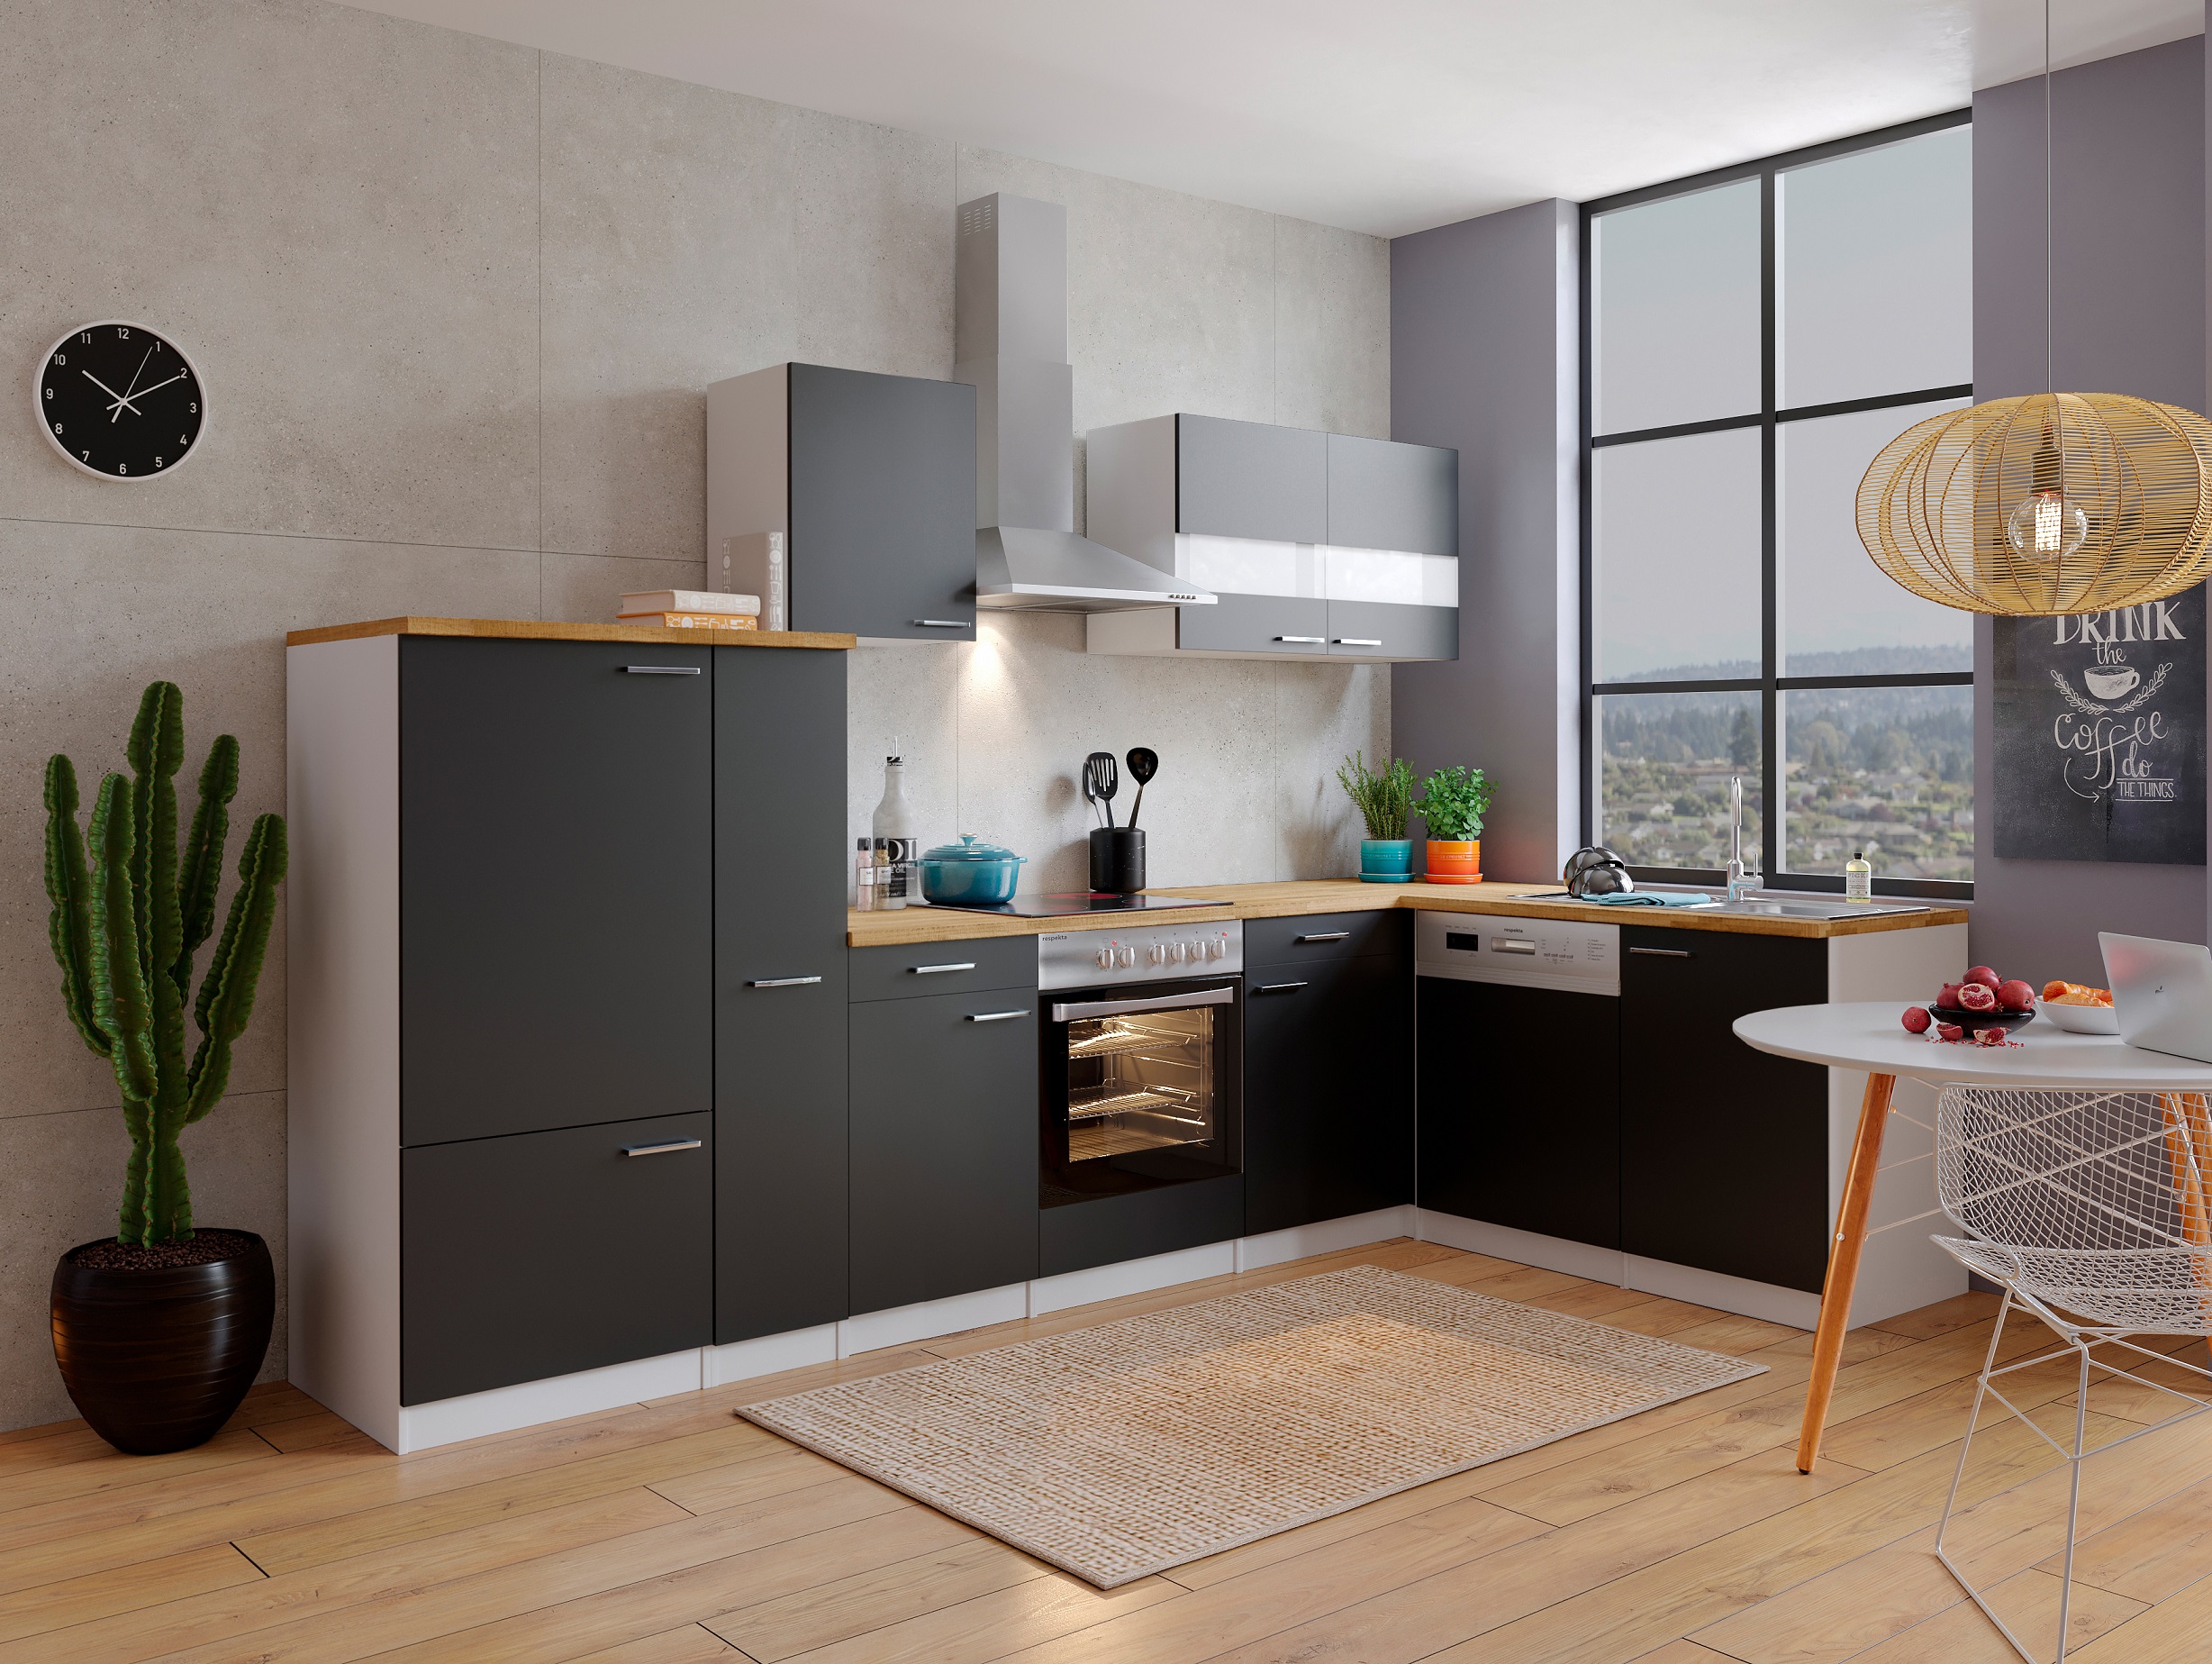 Winkelküche Küchenzeile L-Form Küche Einbauküche weiß schwarz 310x172cm respekta